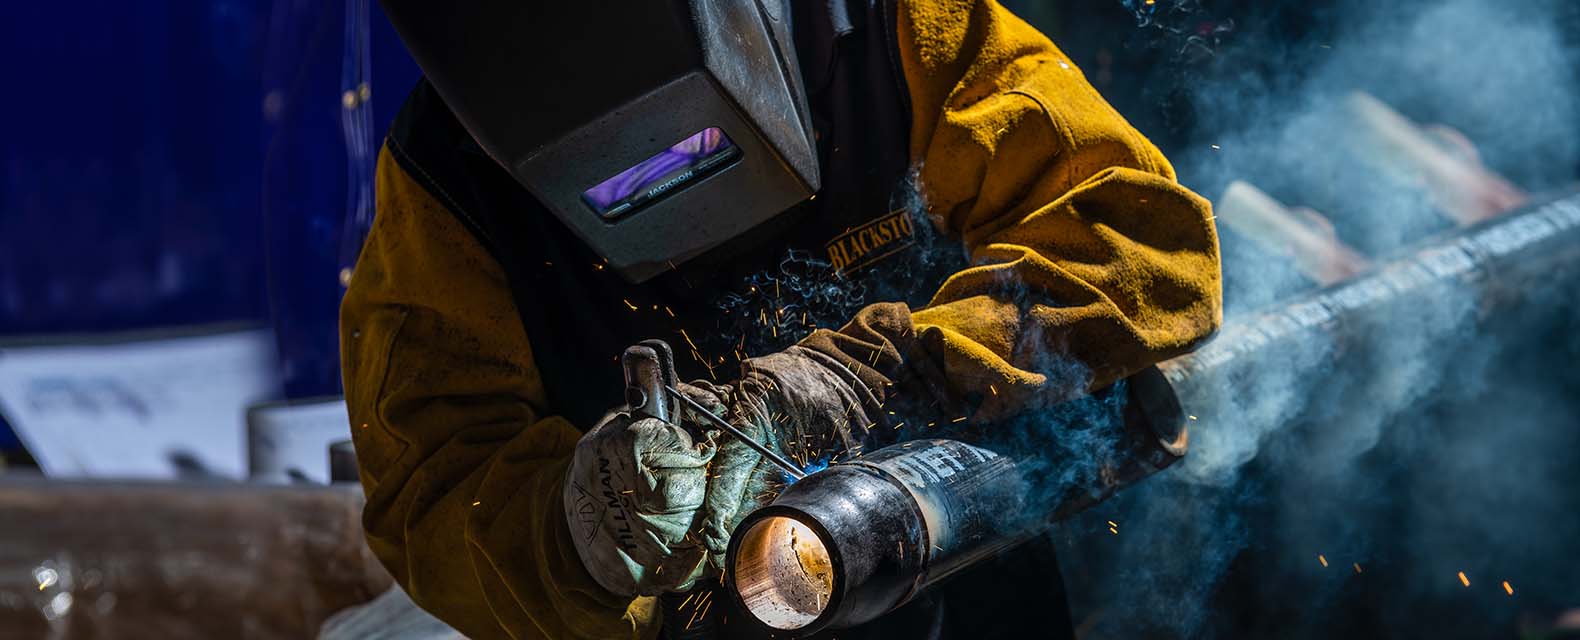 prefab welding